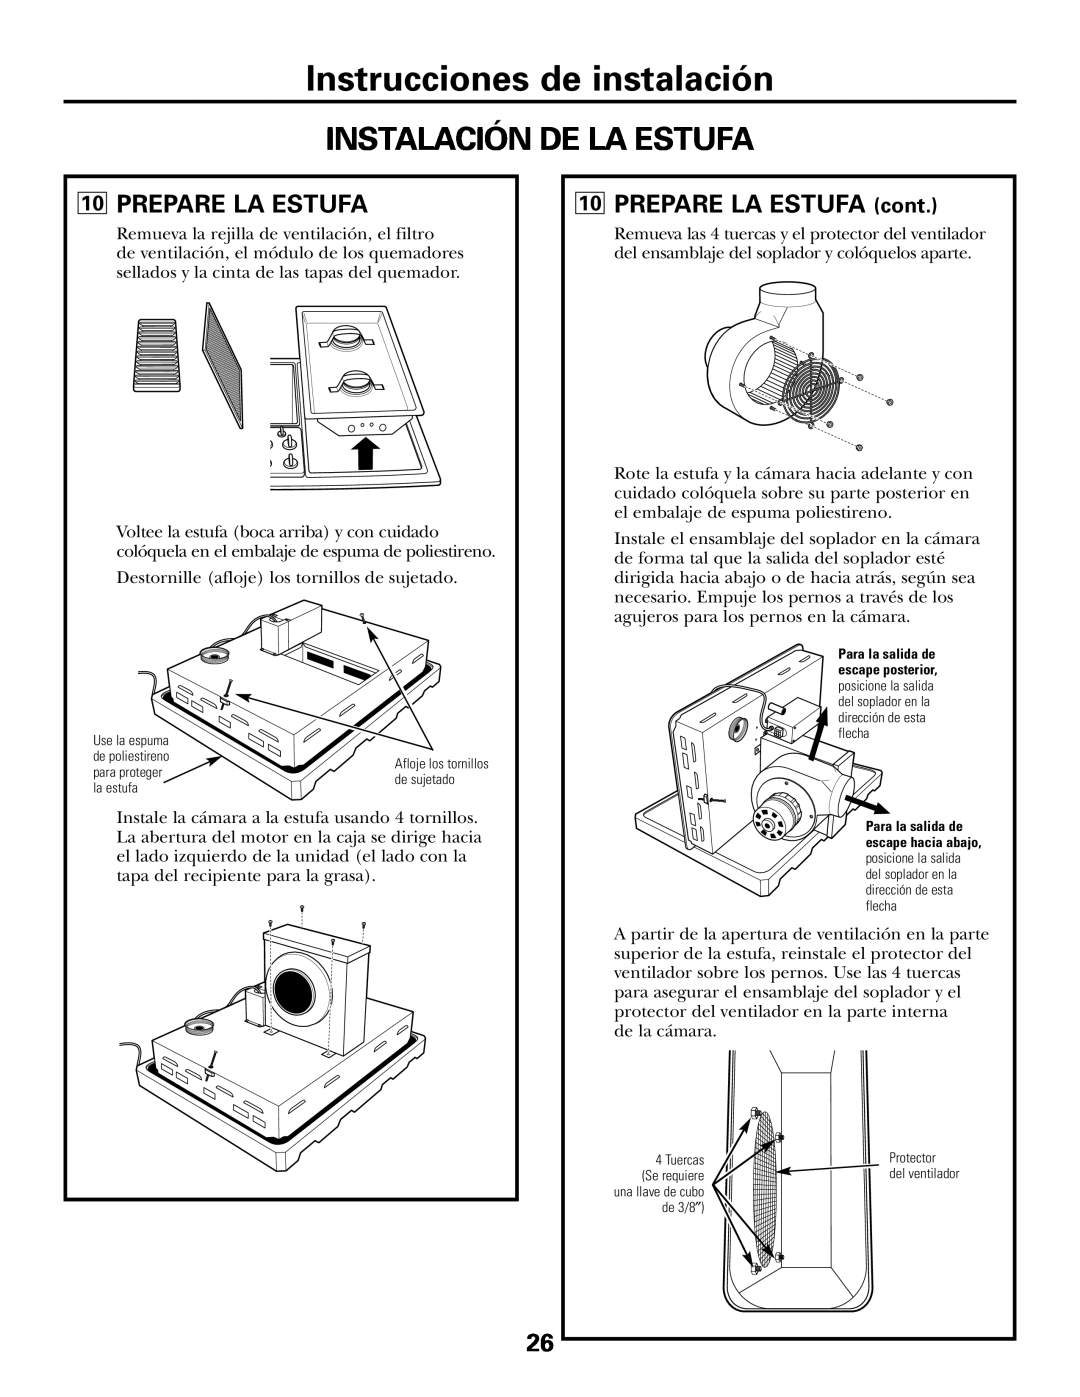 GE JGP985 owner manual Instalación De La Estufa, Instrucciones de instalación, 10PREPARE LA ESTUFA cont 